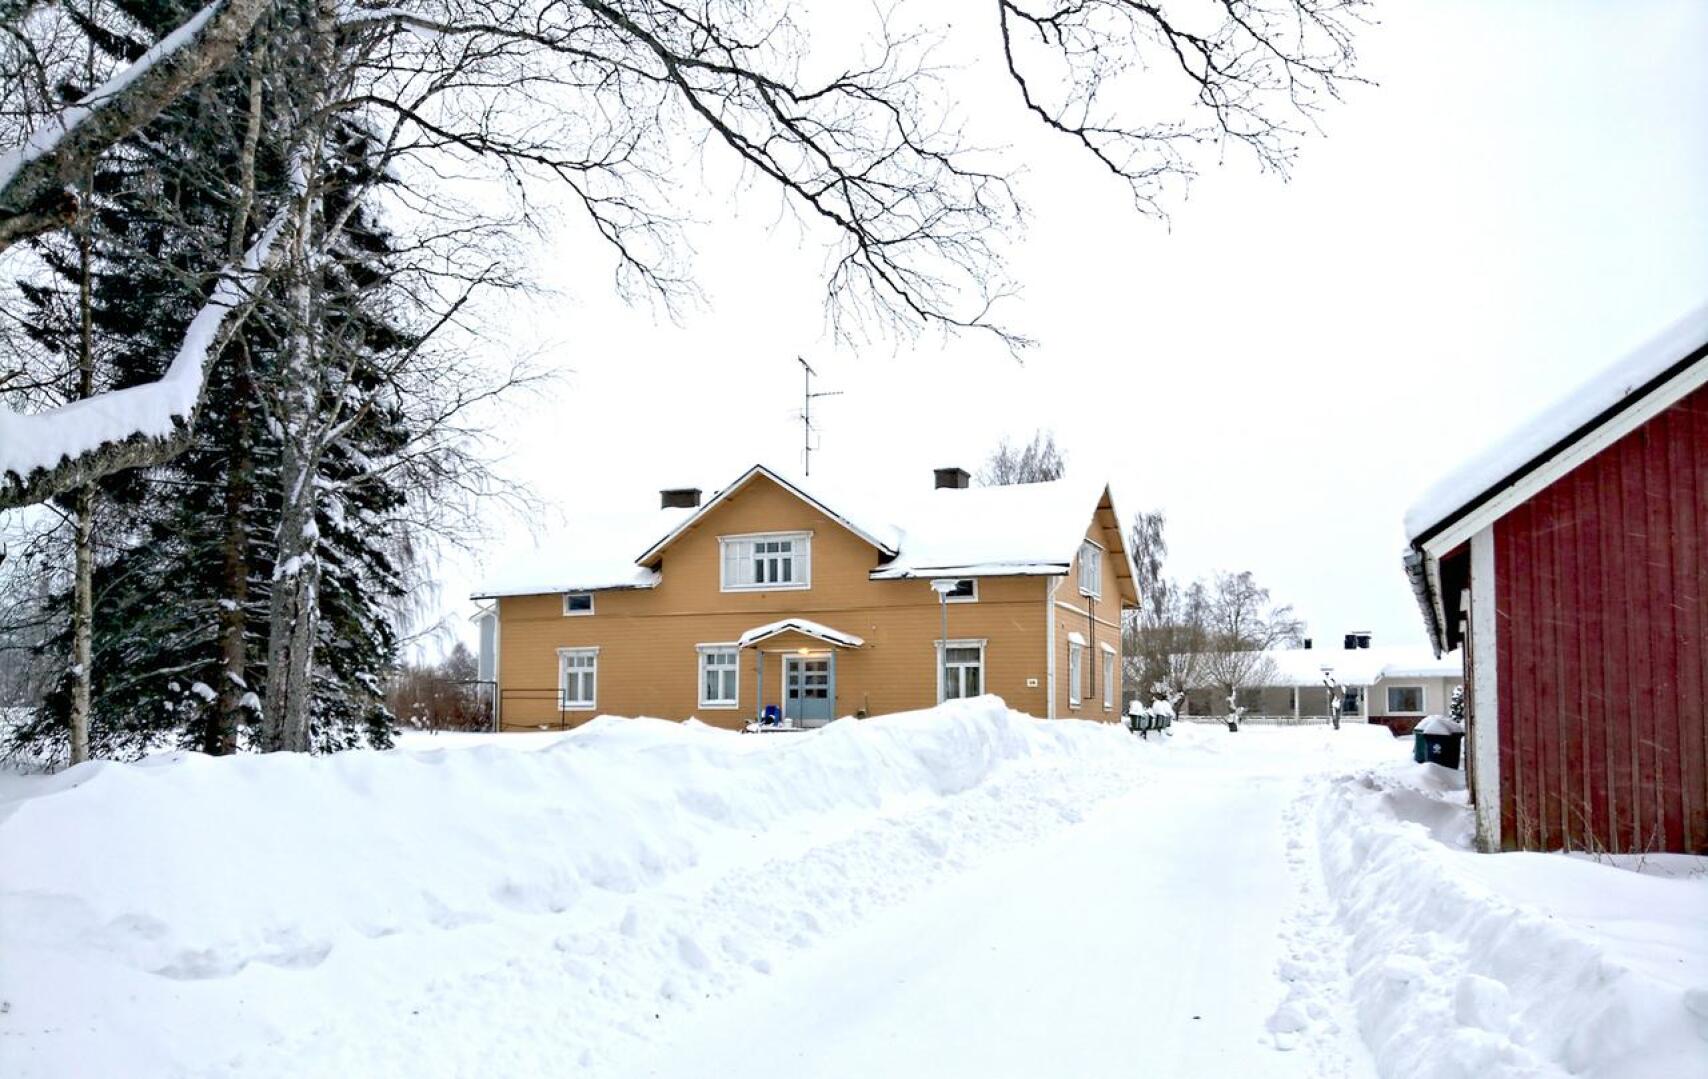 Räyringissä sijaitsevassa Onnelassa on aikoinaan toiminut kunnantoimisto. Nykyään rakennuksessa on asuinhuoneistoja.